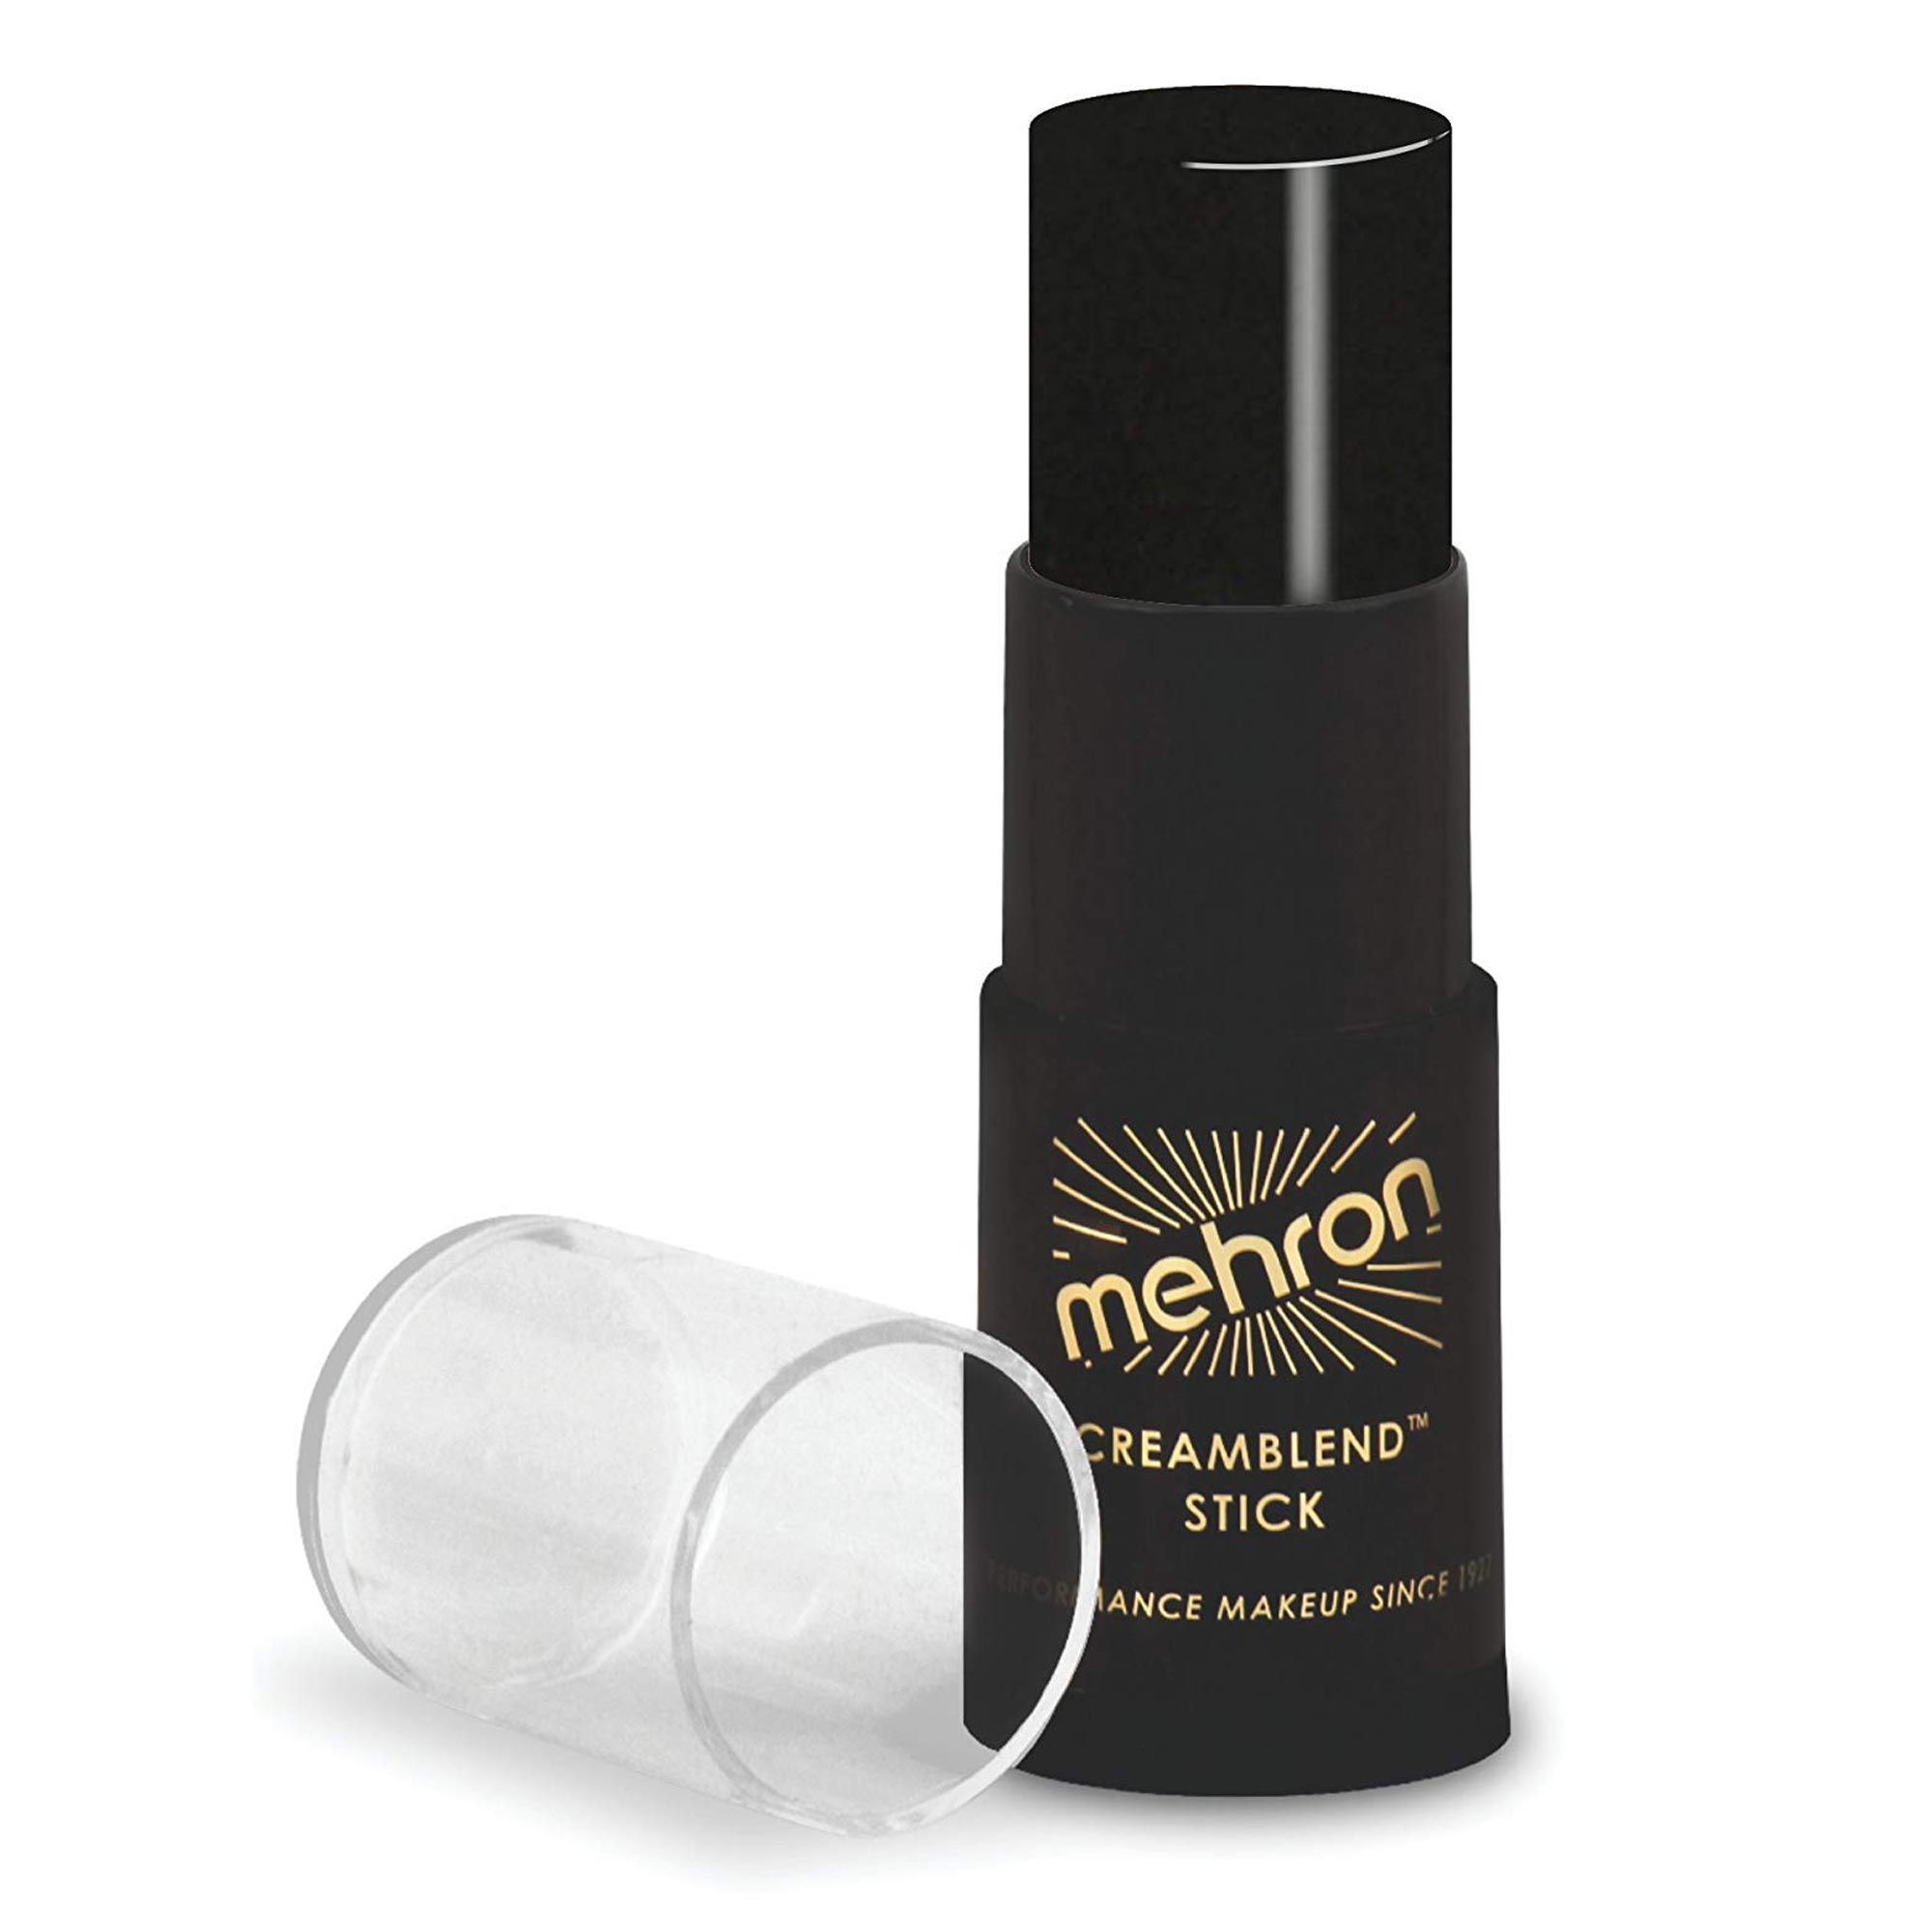 Mehron Cream Blend Stick